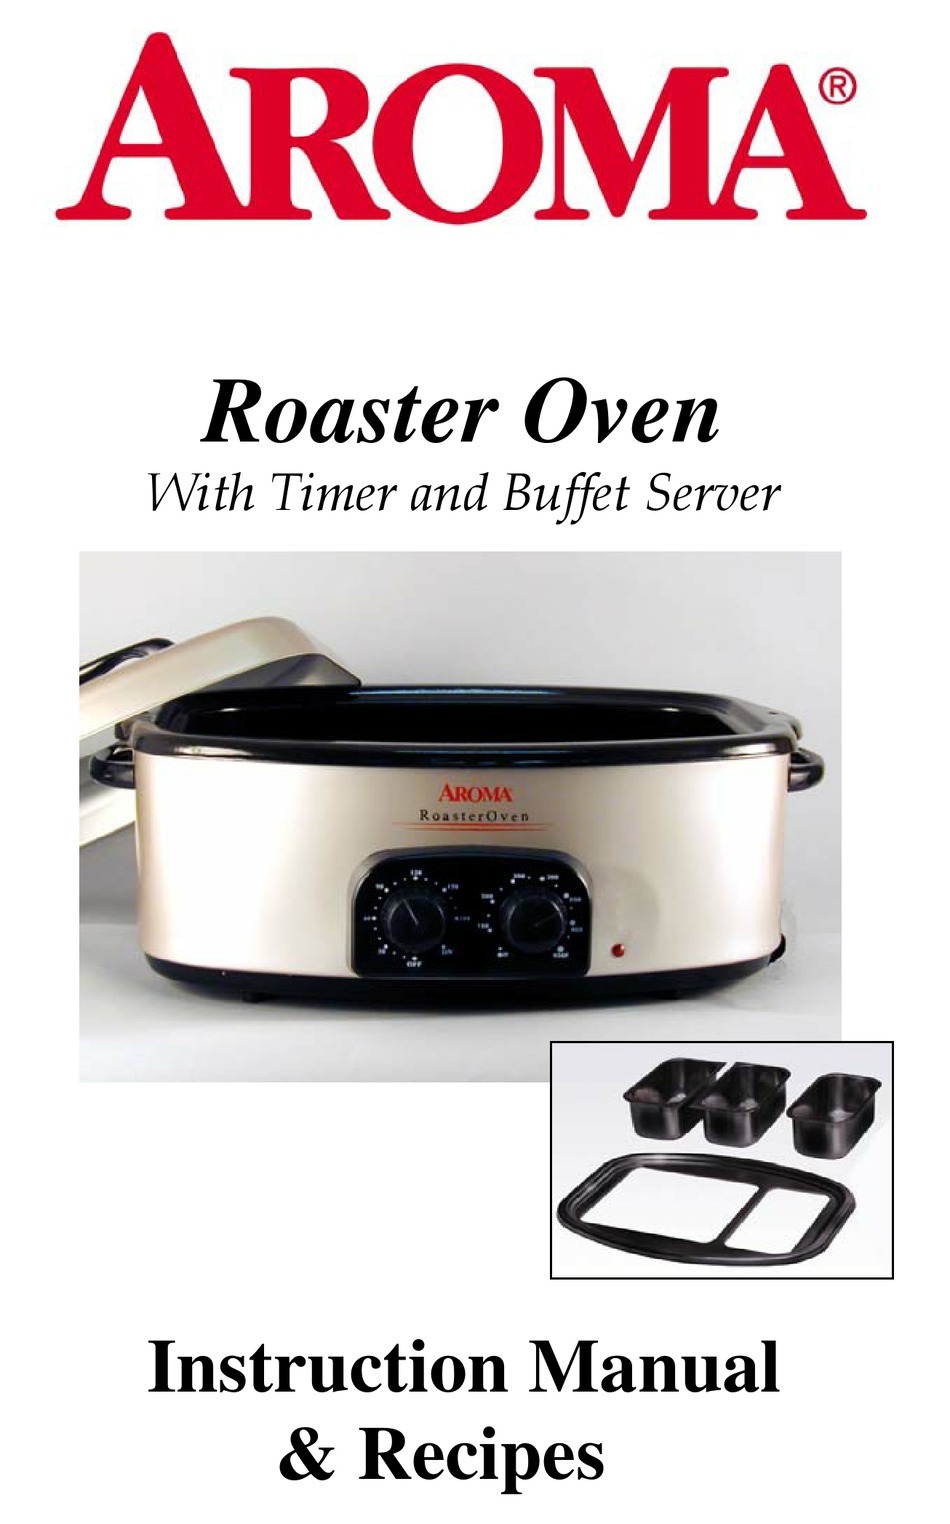 https://data2.manualslib.com/first-image/i11/54/5314/531303/aroma-roaster-ovens.jpg